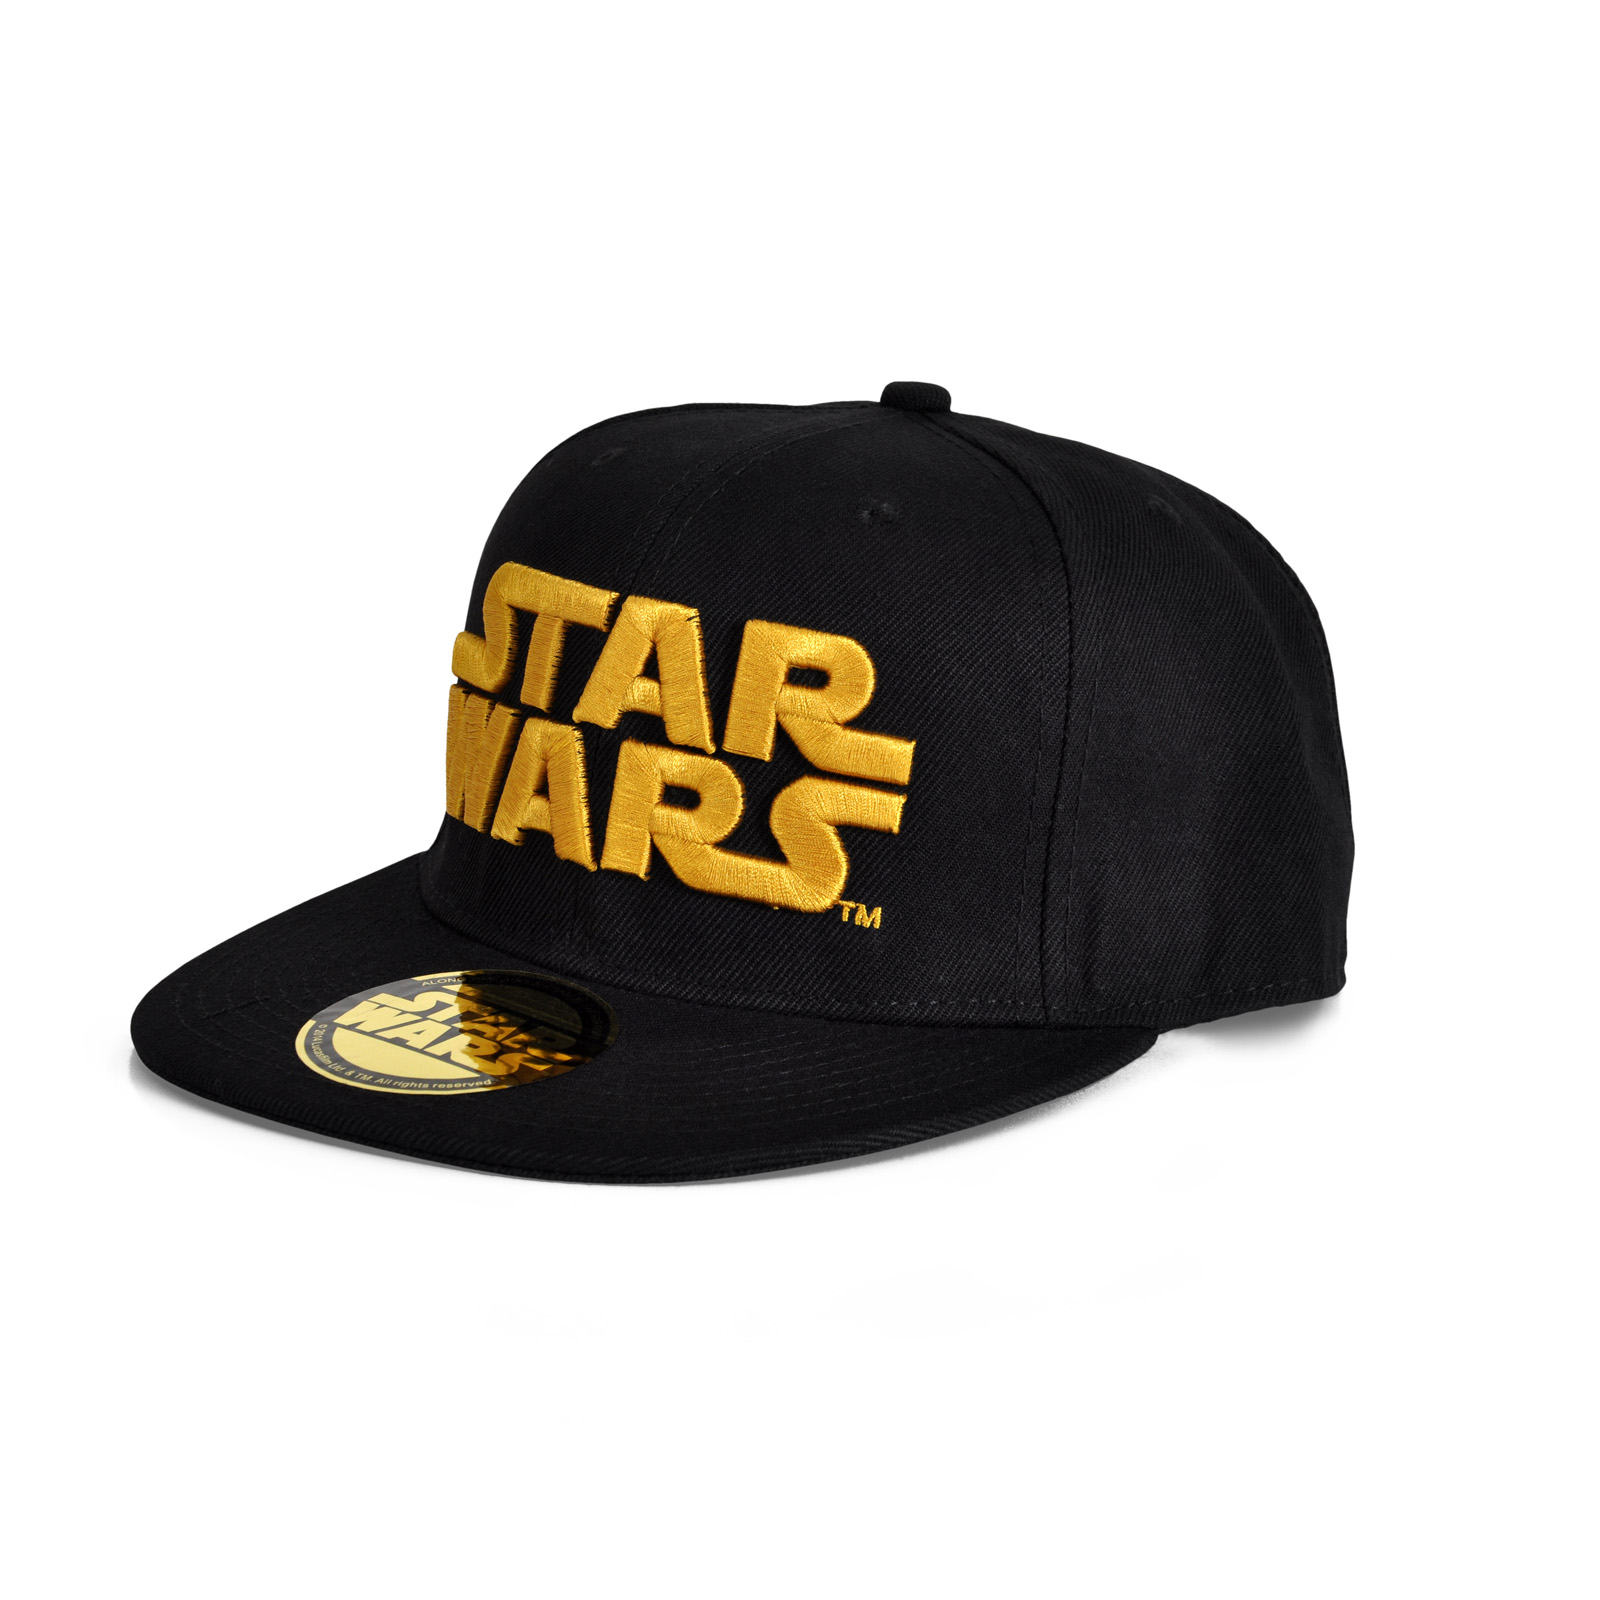 Star Wars - Golden Logo Snapback Cap